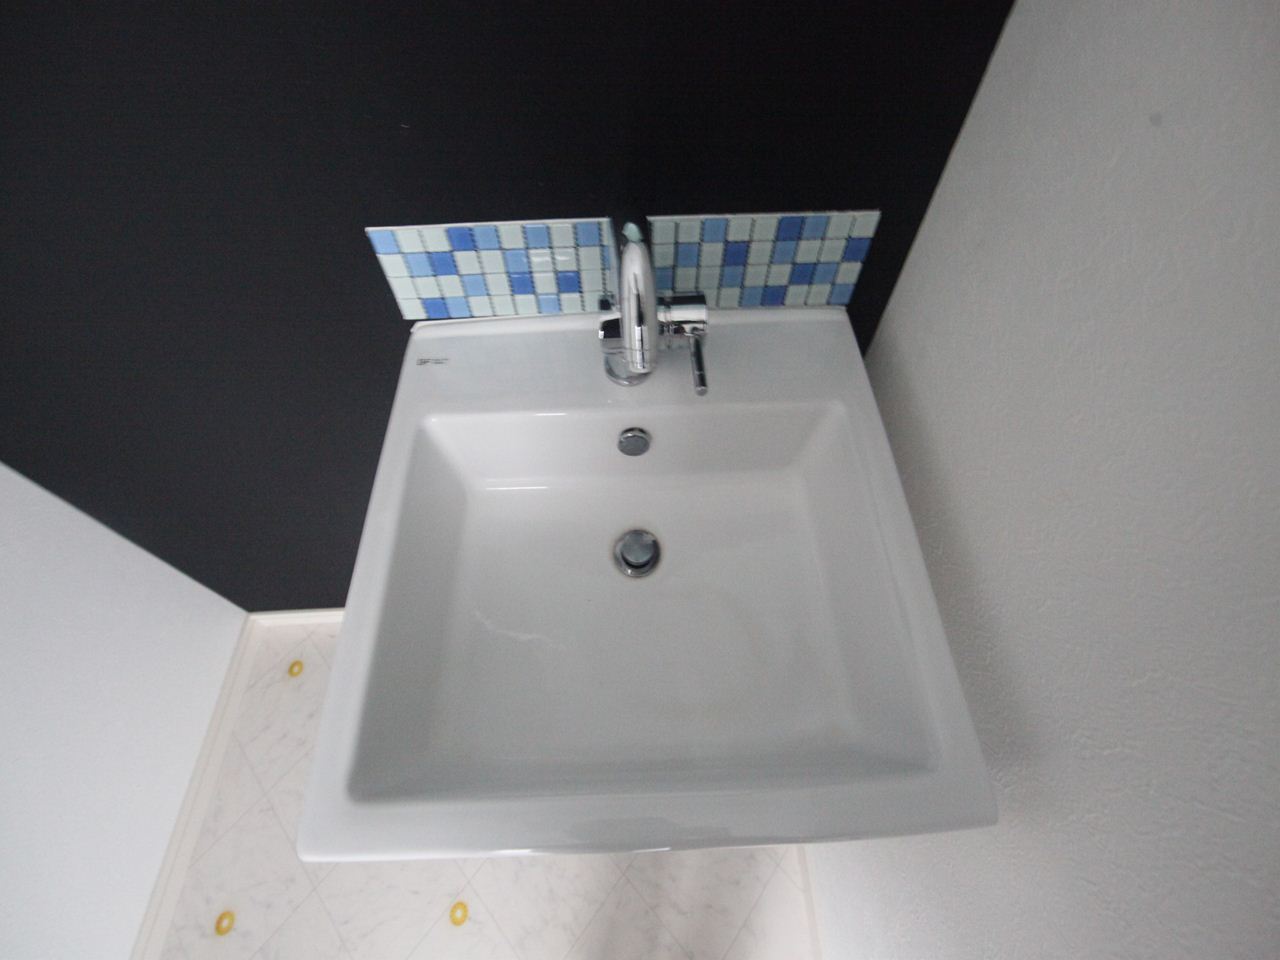 Washroom. Stylish independent wash basin